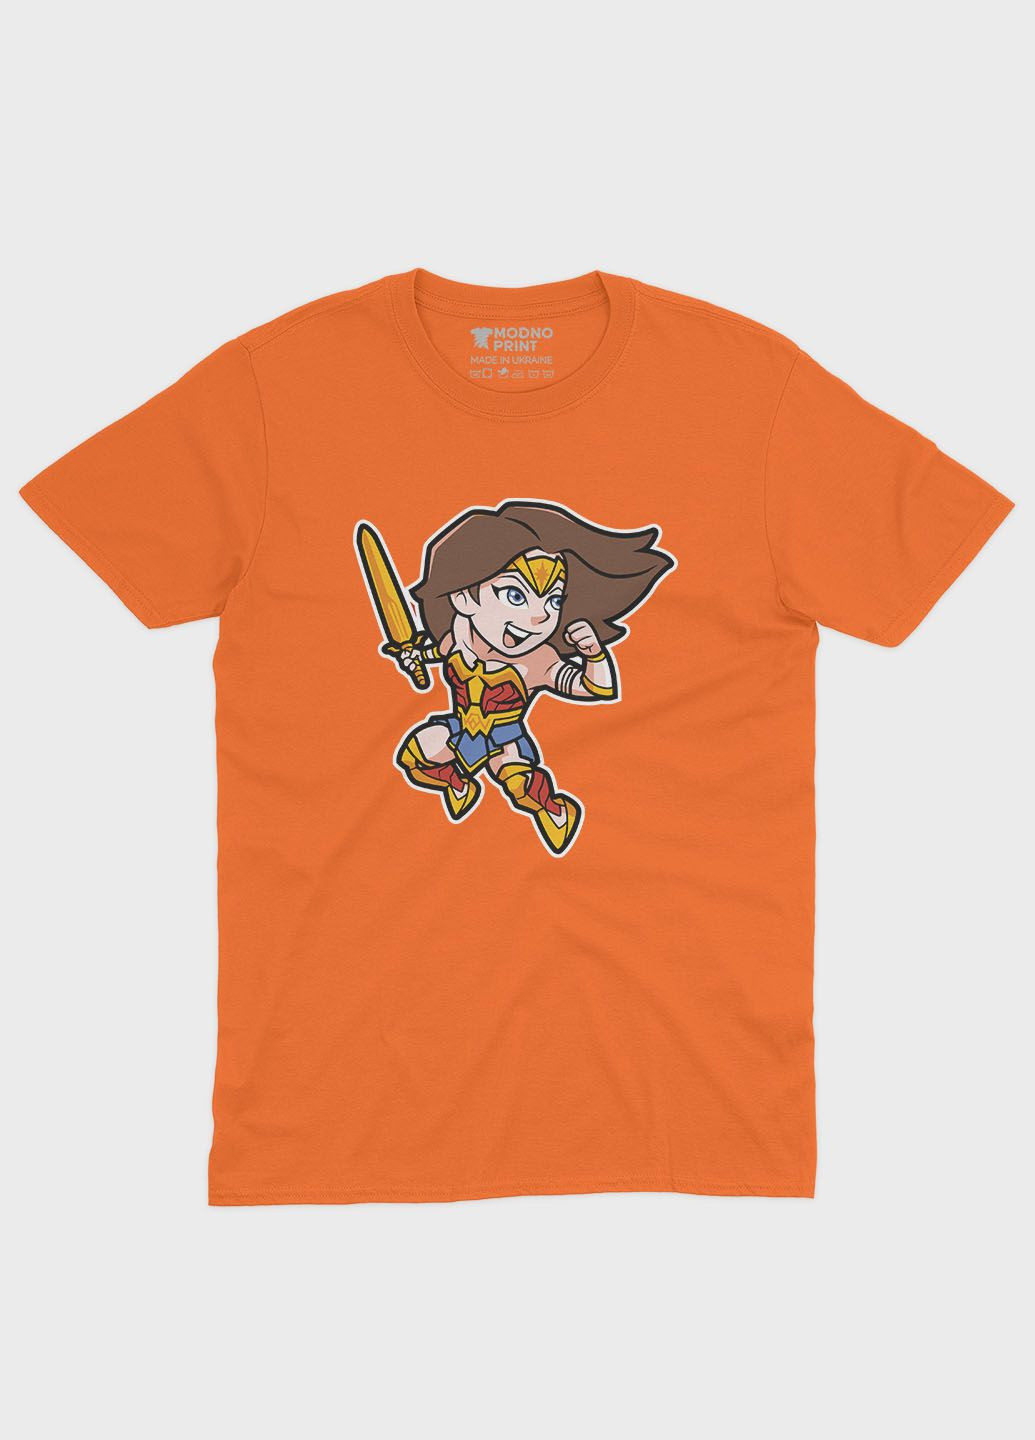 Помаранчева демісезонна футболка для хлопчика з принтом супергероя - диво-жінка (ts001-1-ora-006-006-001-b) Modno